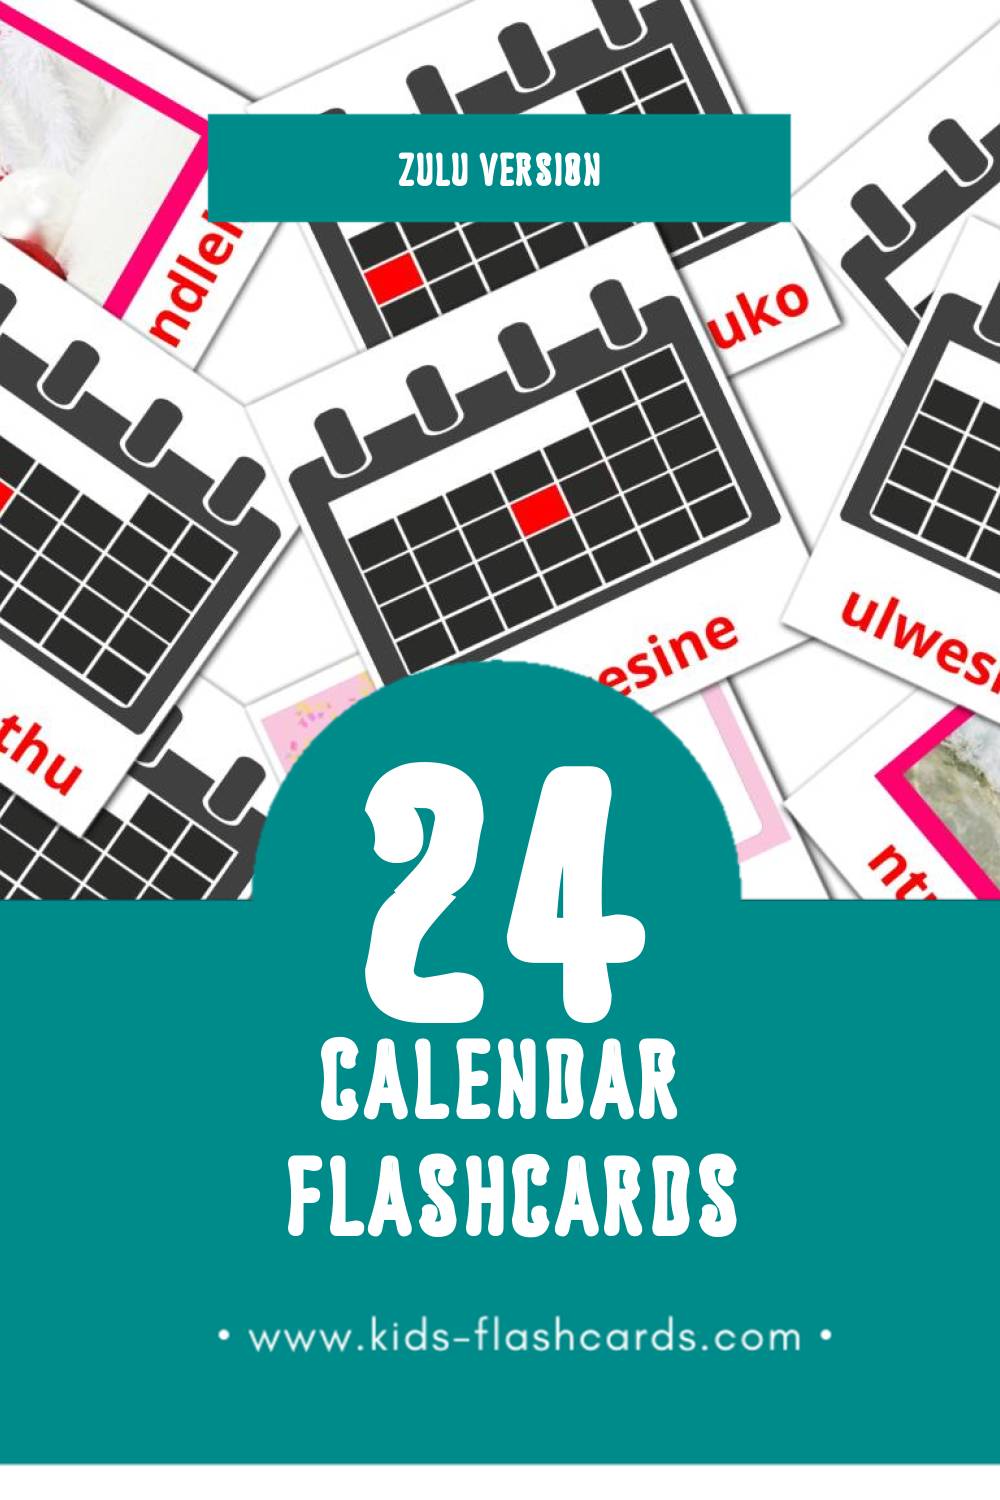 24 FREE Zulu Calendar Flashcards PDF